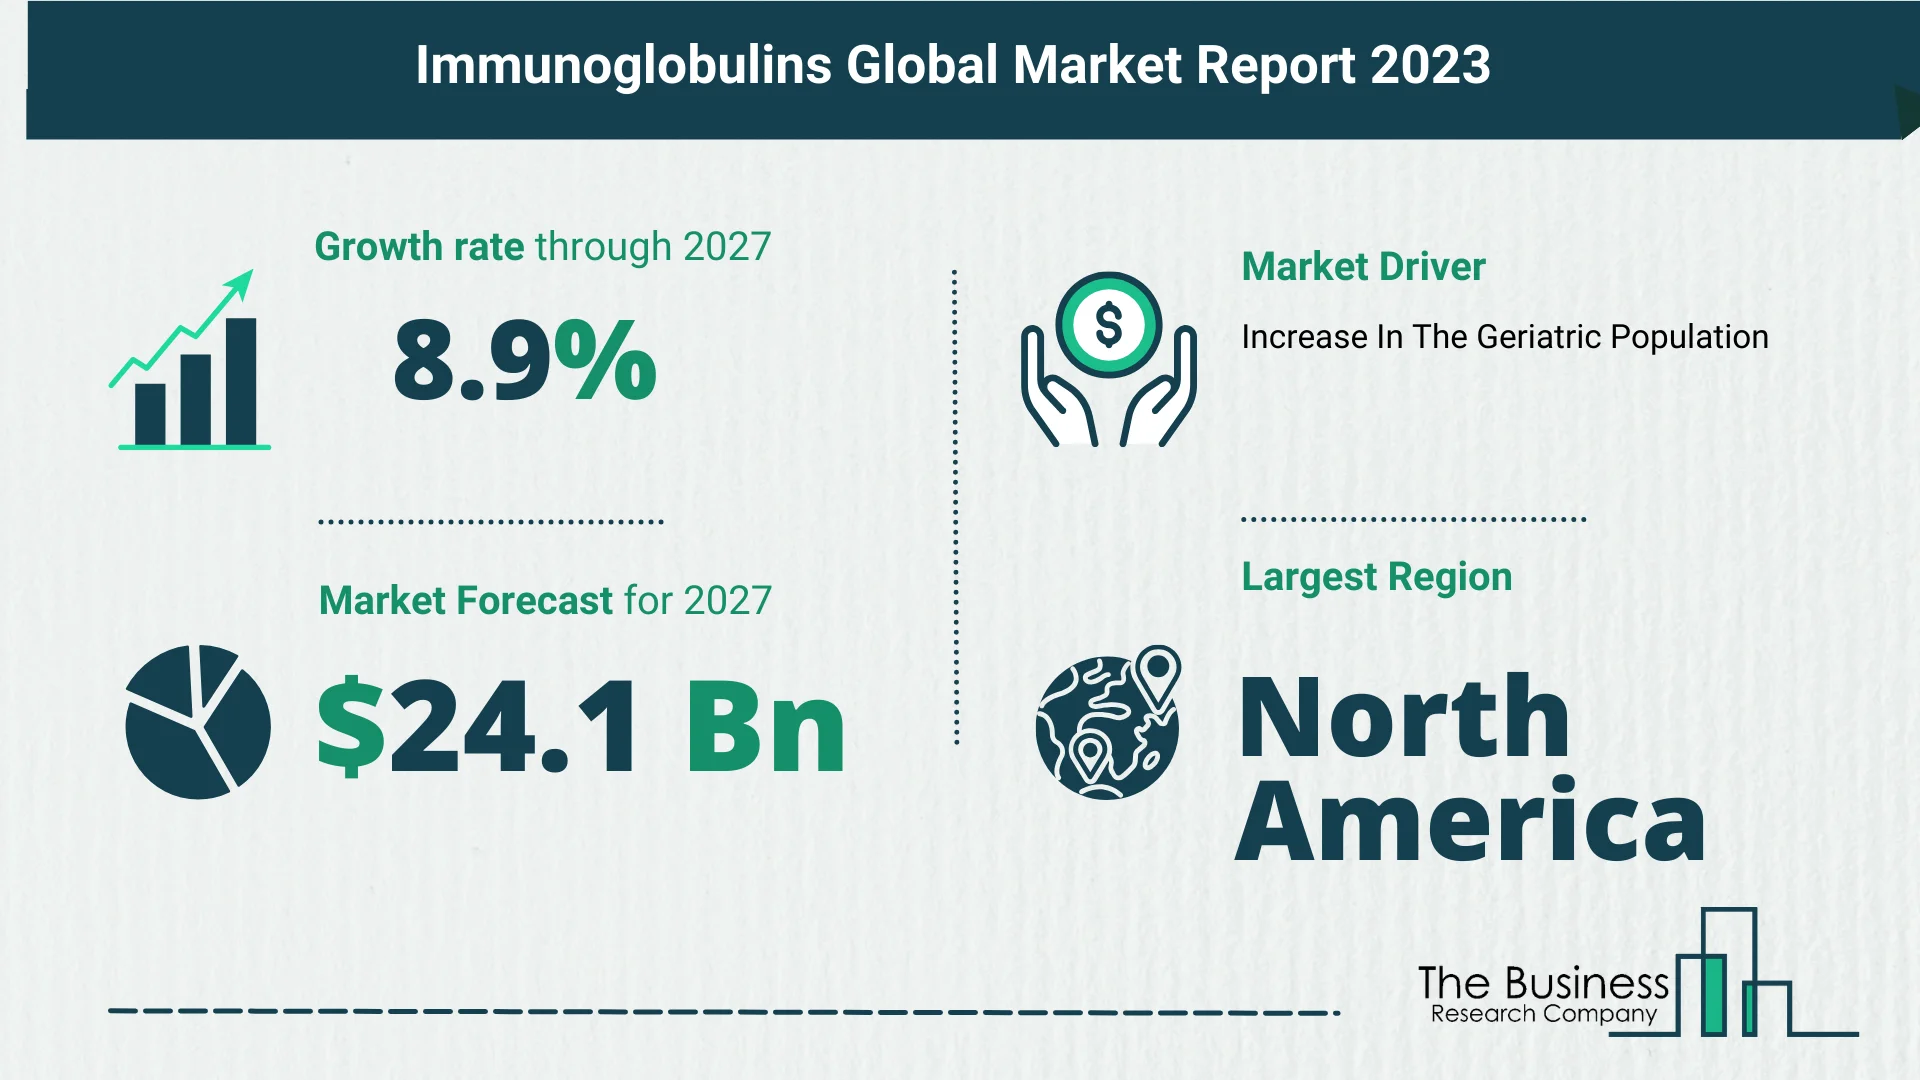 Global Immunoglobulins Market Report 2023 – Top Market Trends And Opportunities